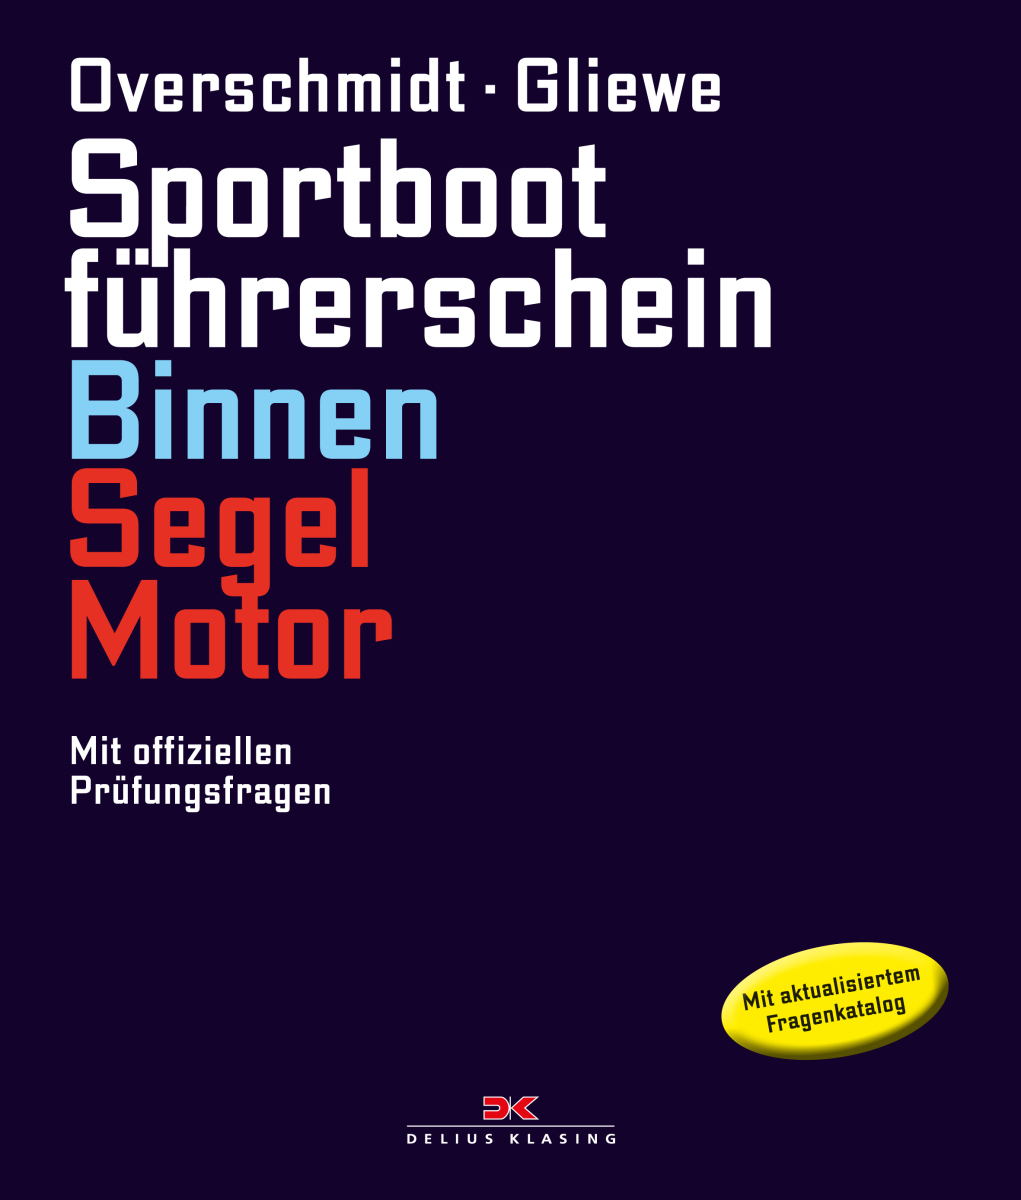 Sportbootführerschein Binnen Segeln / Motor